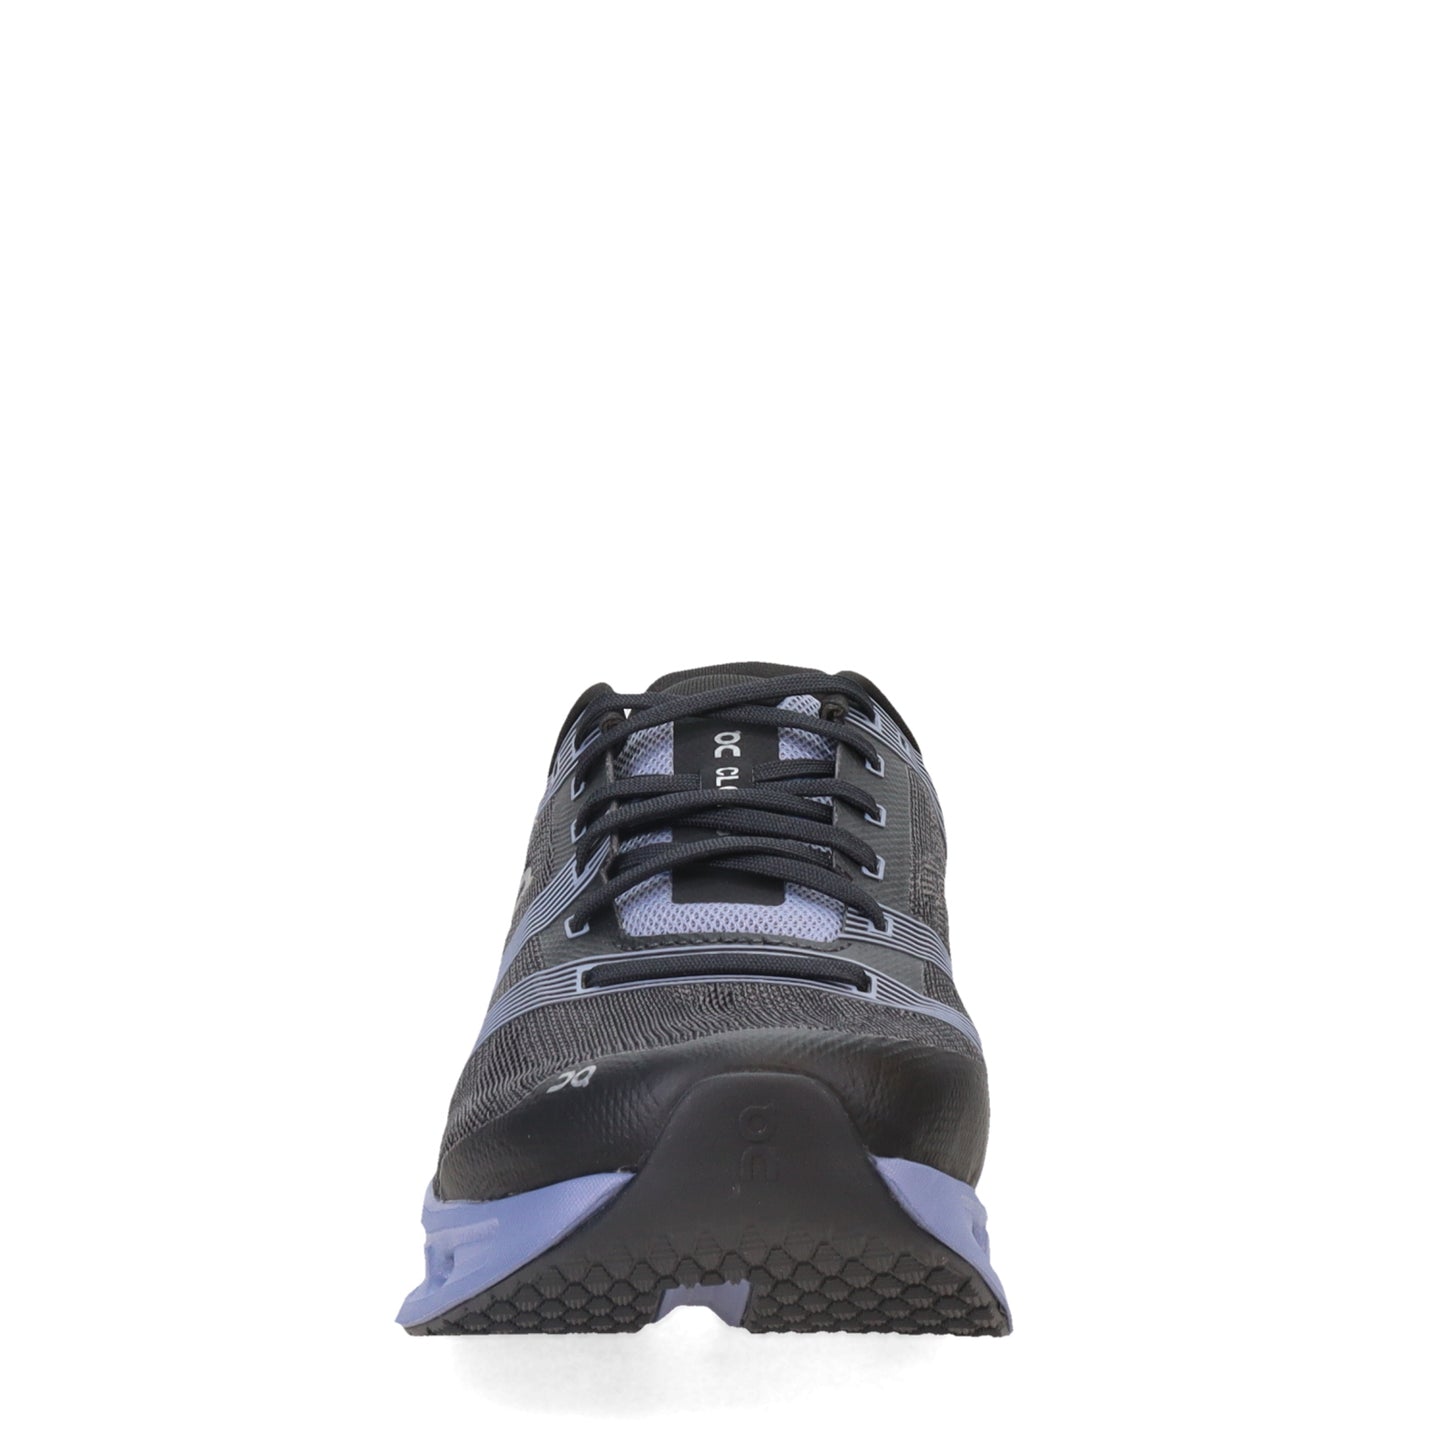 Peltz Shoes  Men's On Running Cloudgo Running Shoe - Wide Width BLACK/SHALE 65.98231